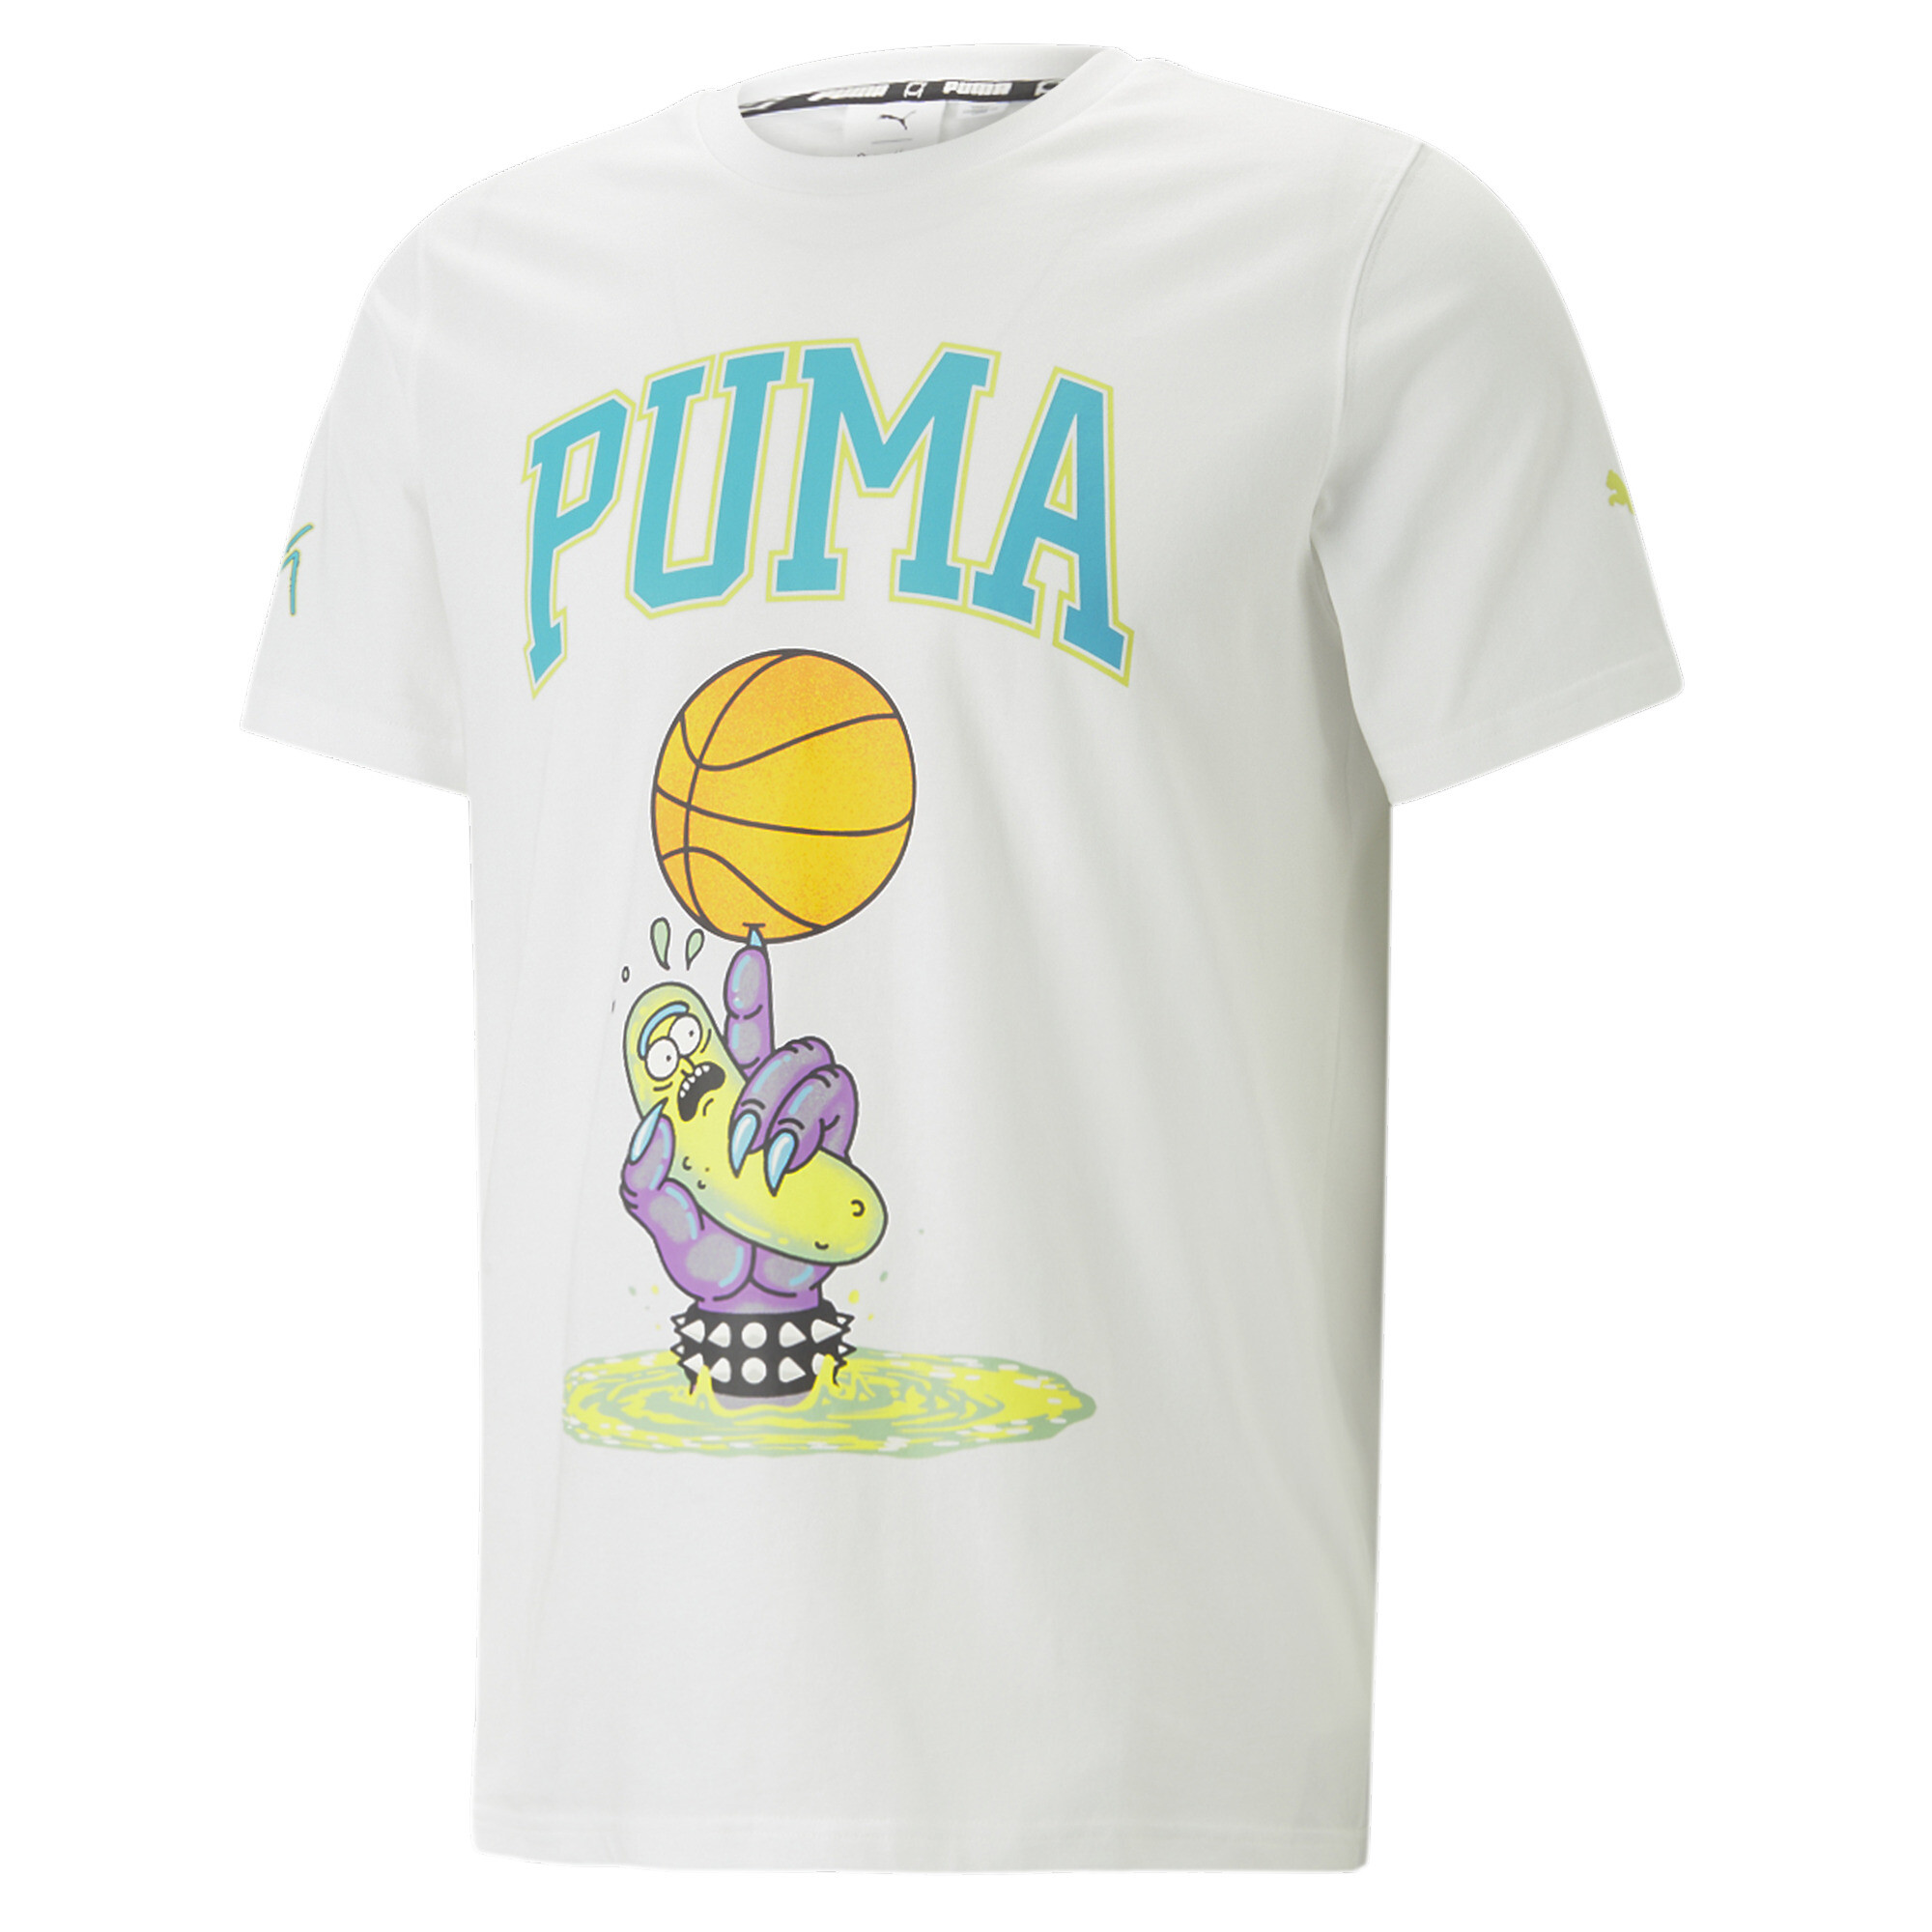 MEN'S Tops| Puma PUMA South Africa Official shopping site